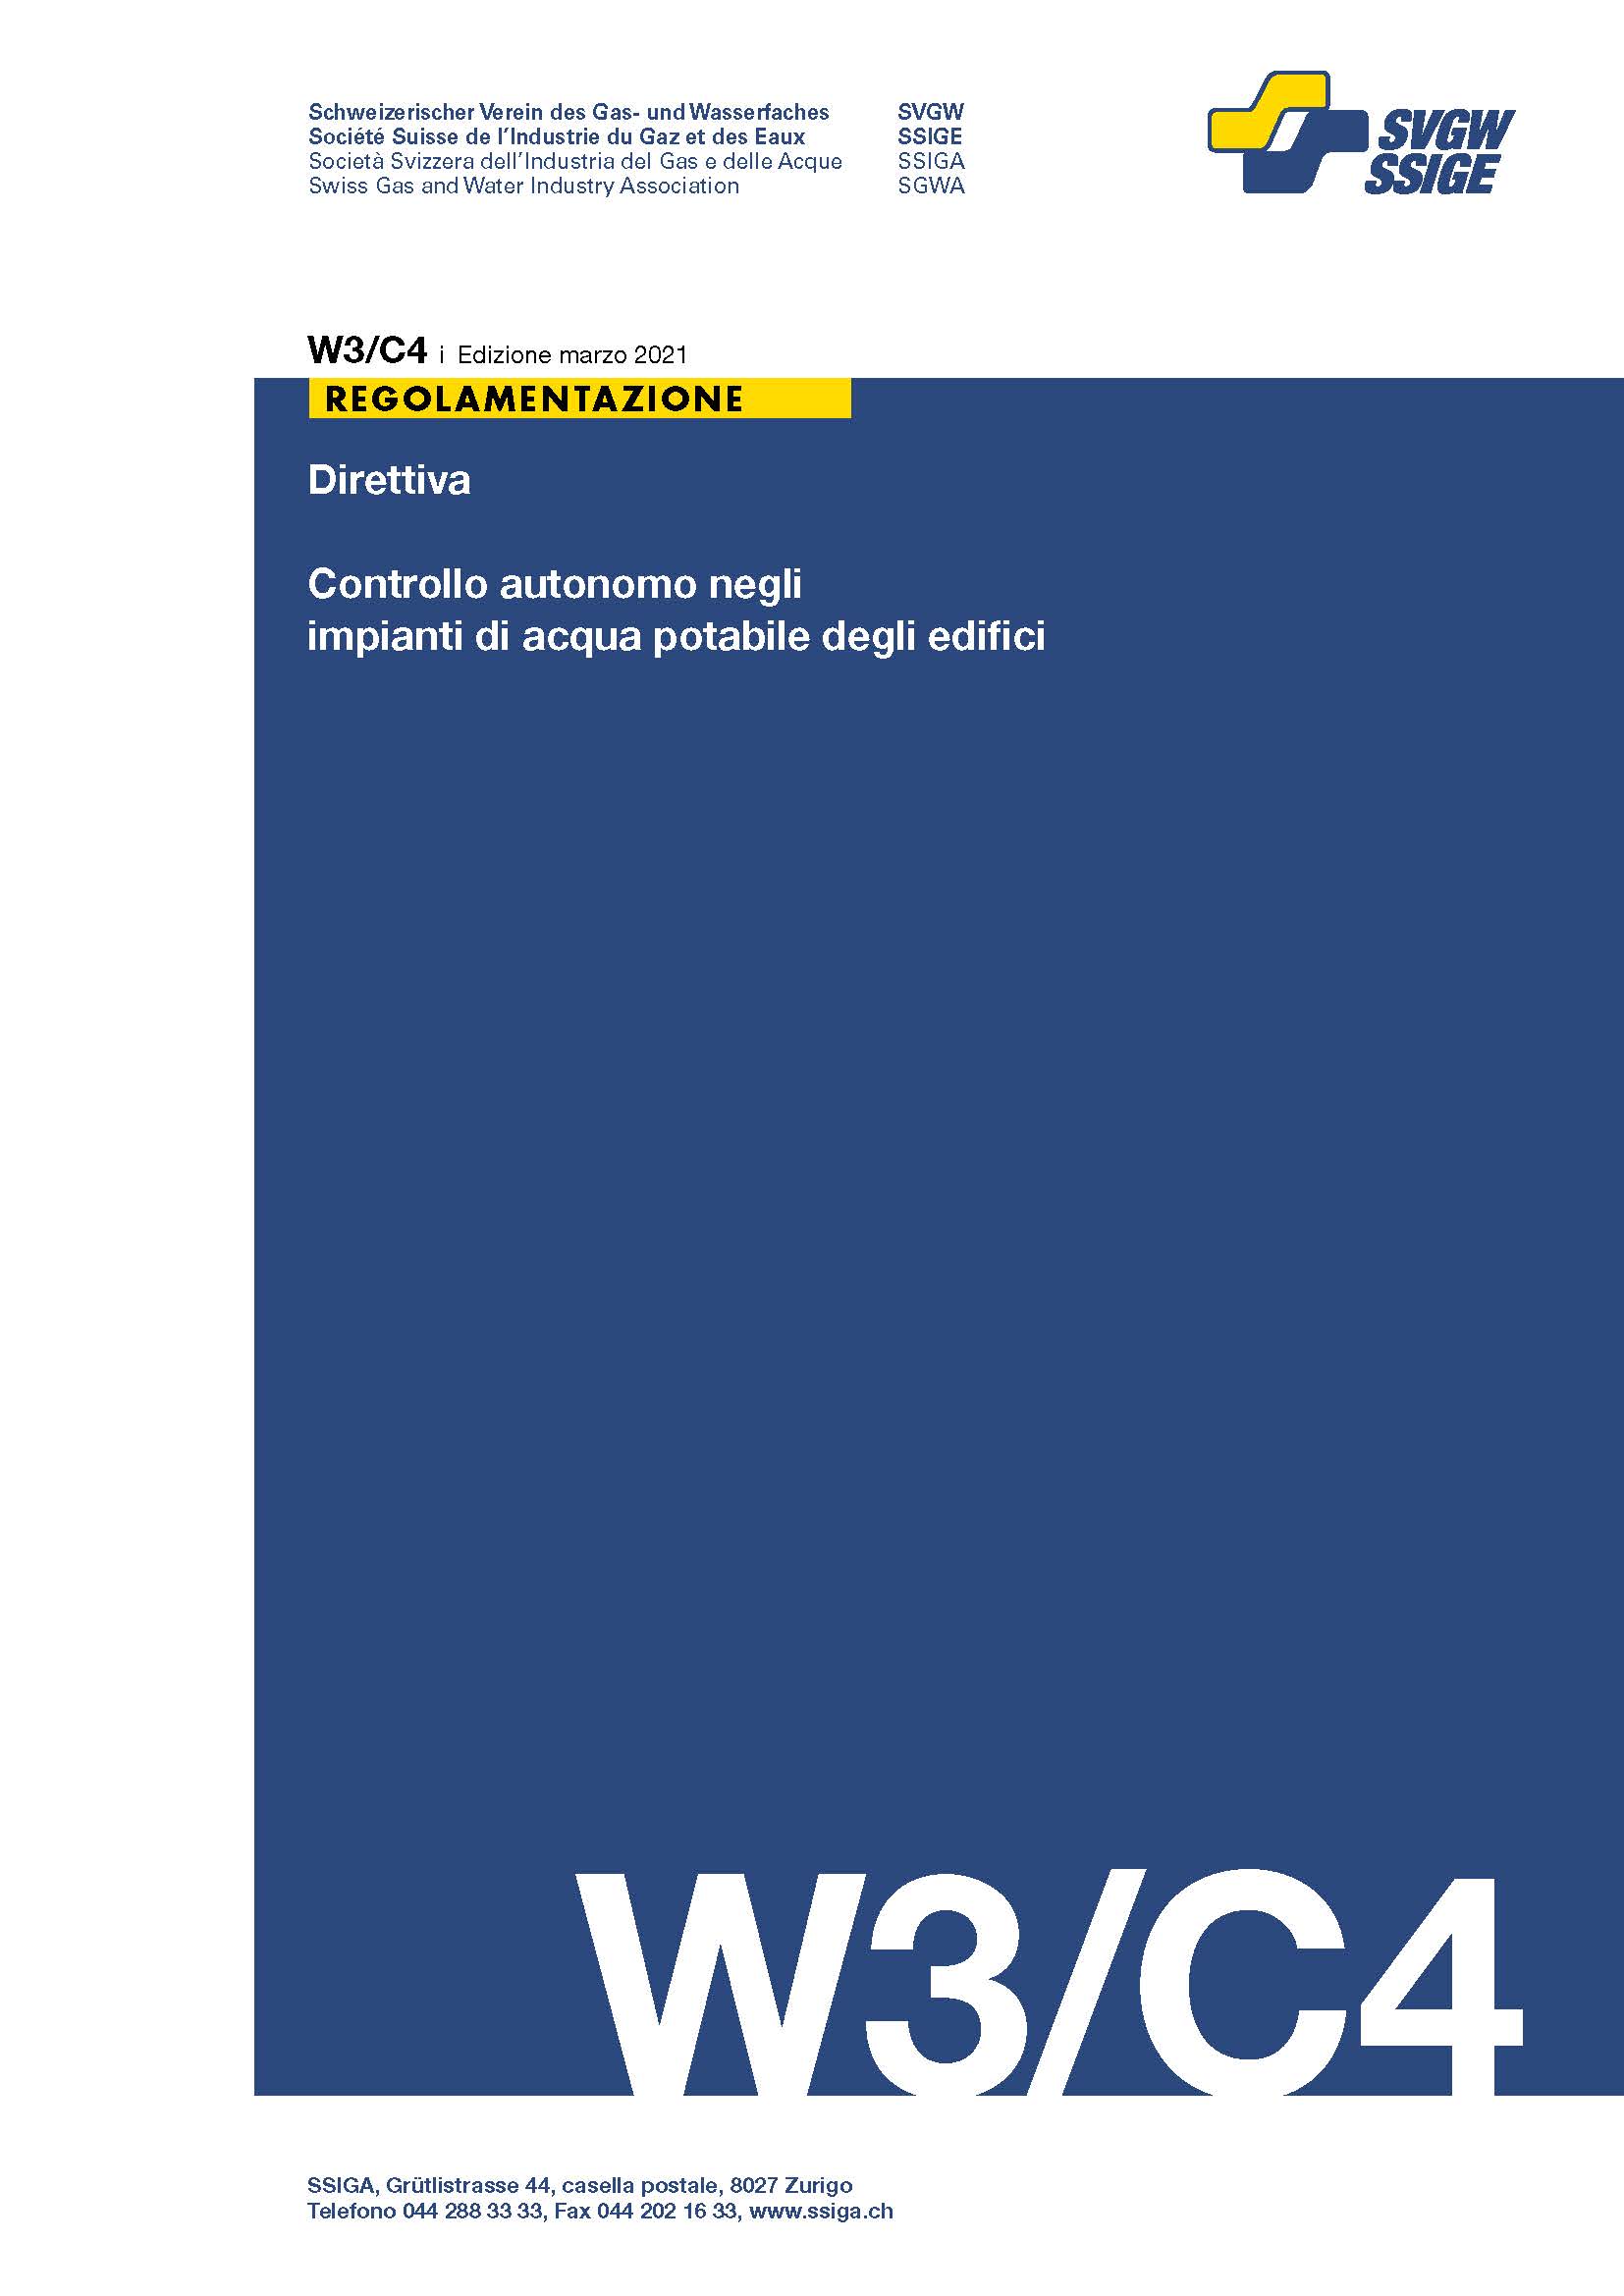 W3/C4 i Direttiva; Controllo autonomo negli impianti di acqua potabile degli edifici (1)